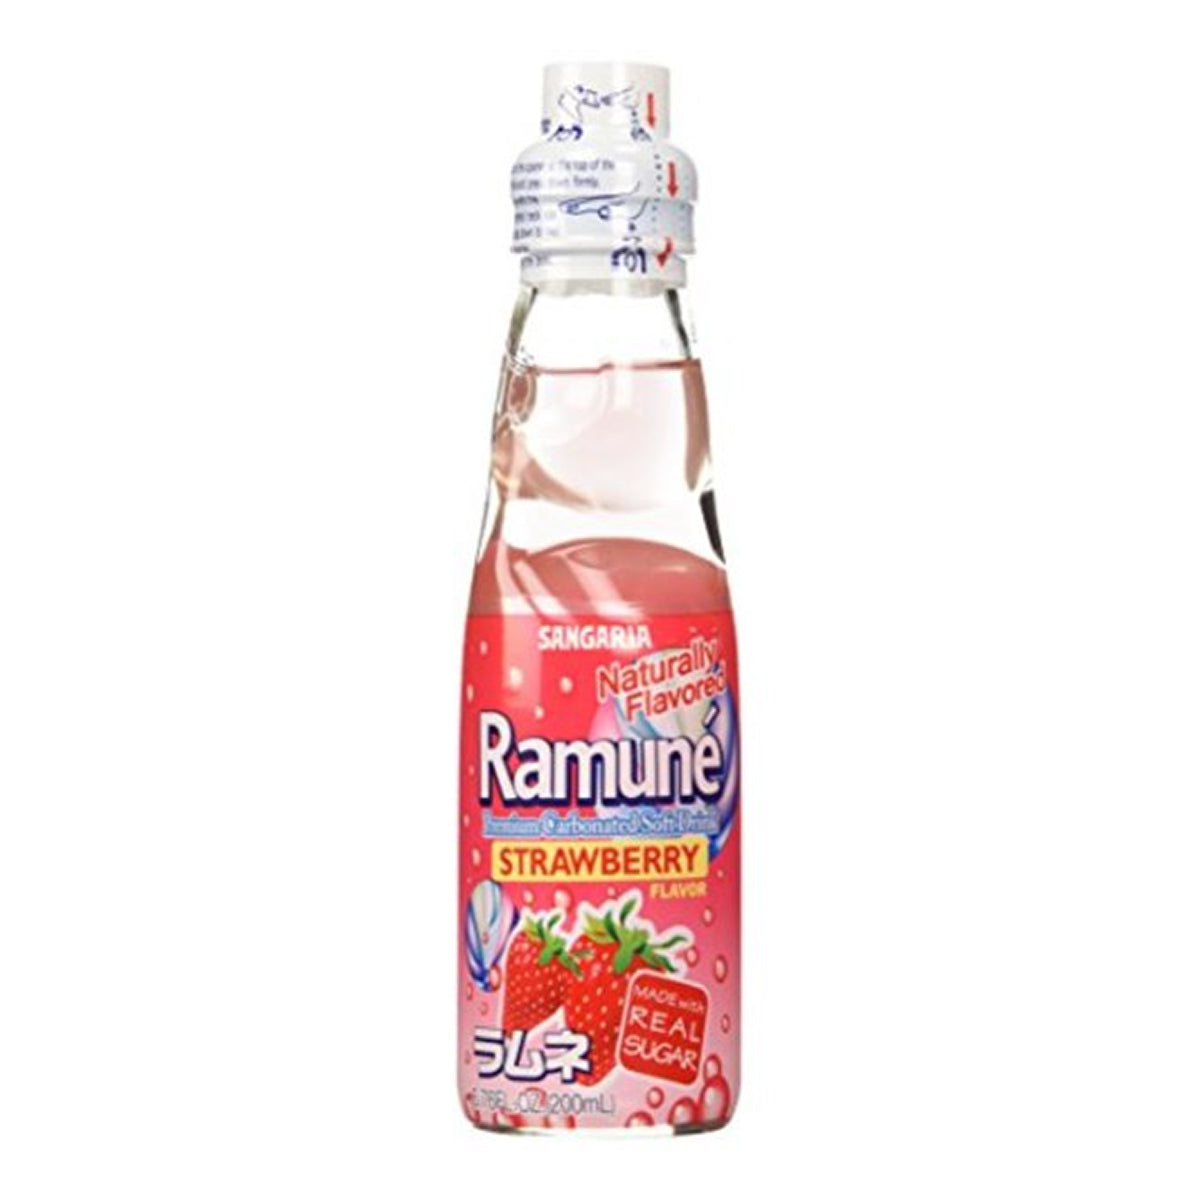 sangaria ramune strawberry drink - 200ml